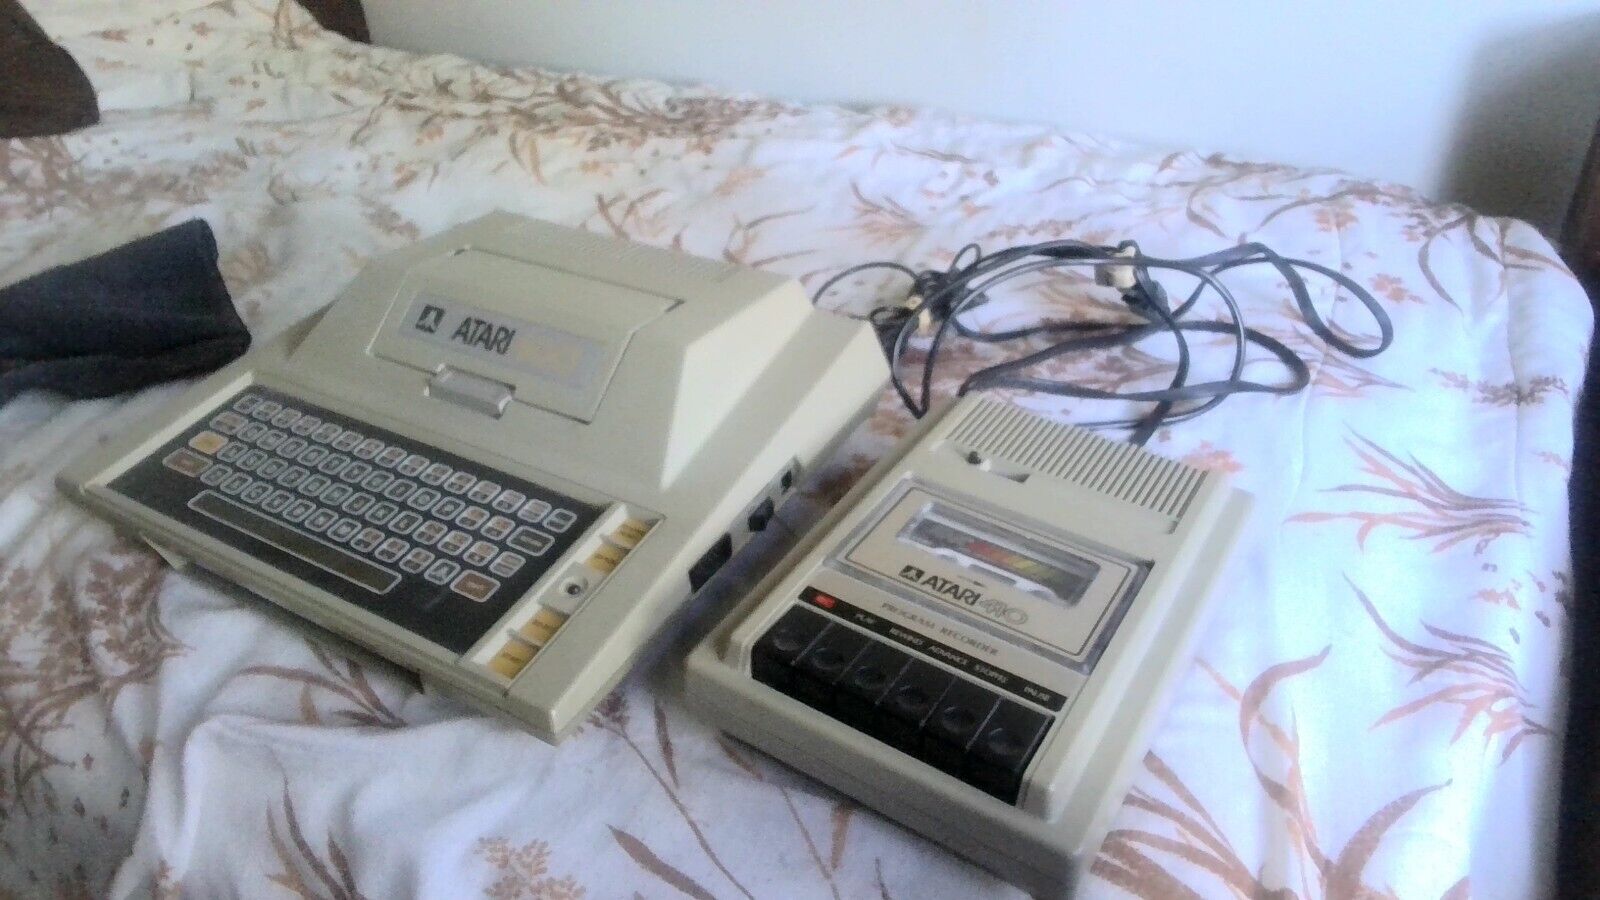 Atari 400 with program recorder and manual